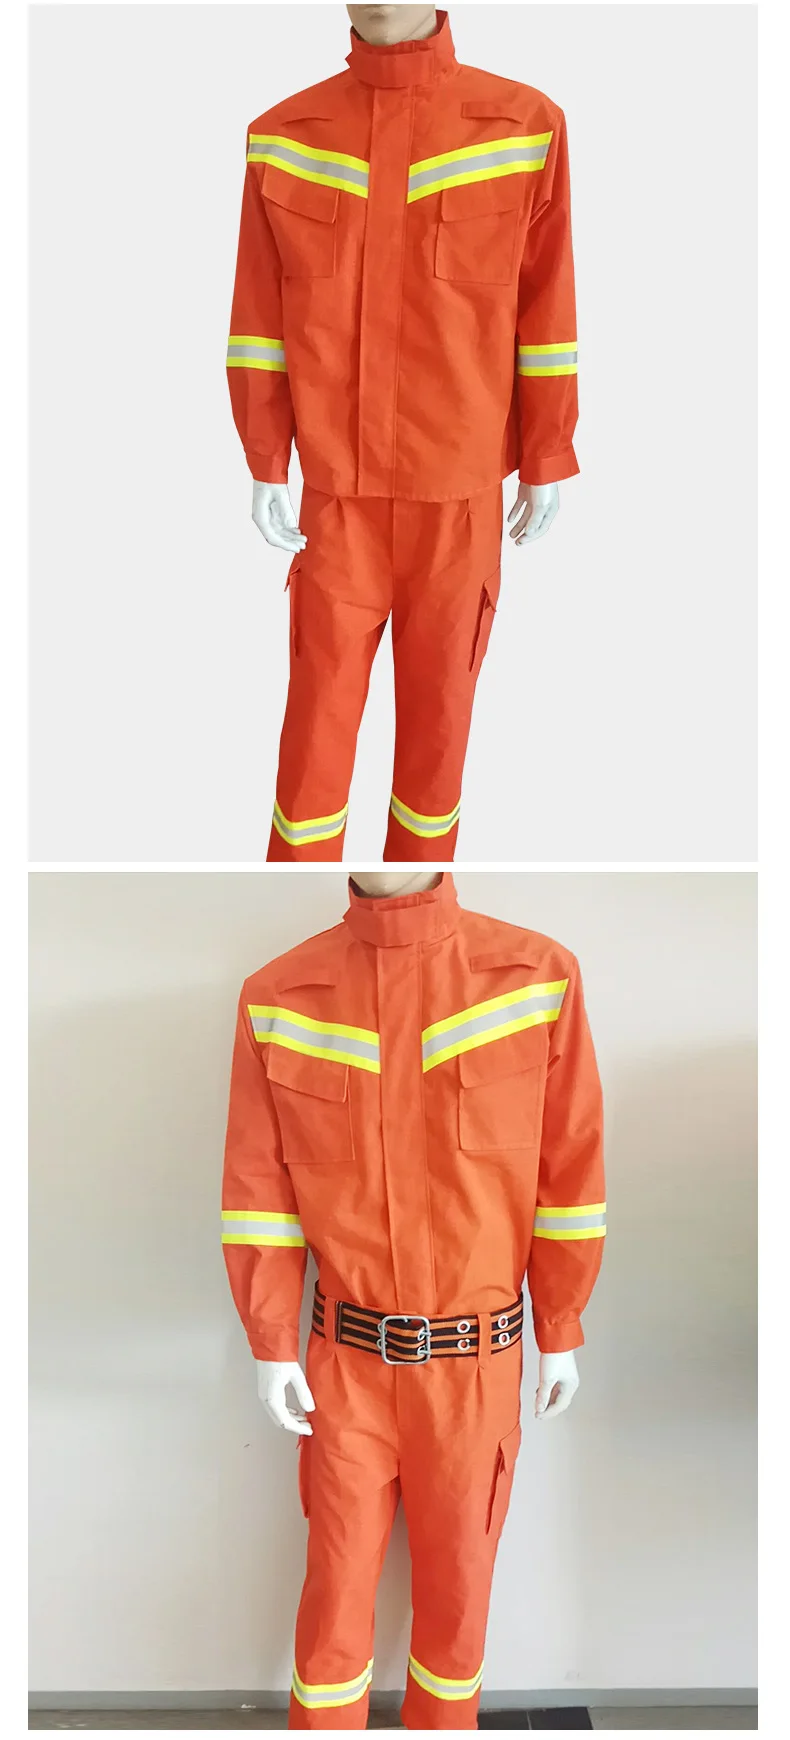 Анти-высокая температура в случае пожара, при пожаре спасательный костюм анти-износа огнестойкая изоляция спасательный костюм